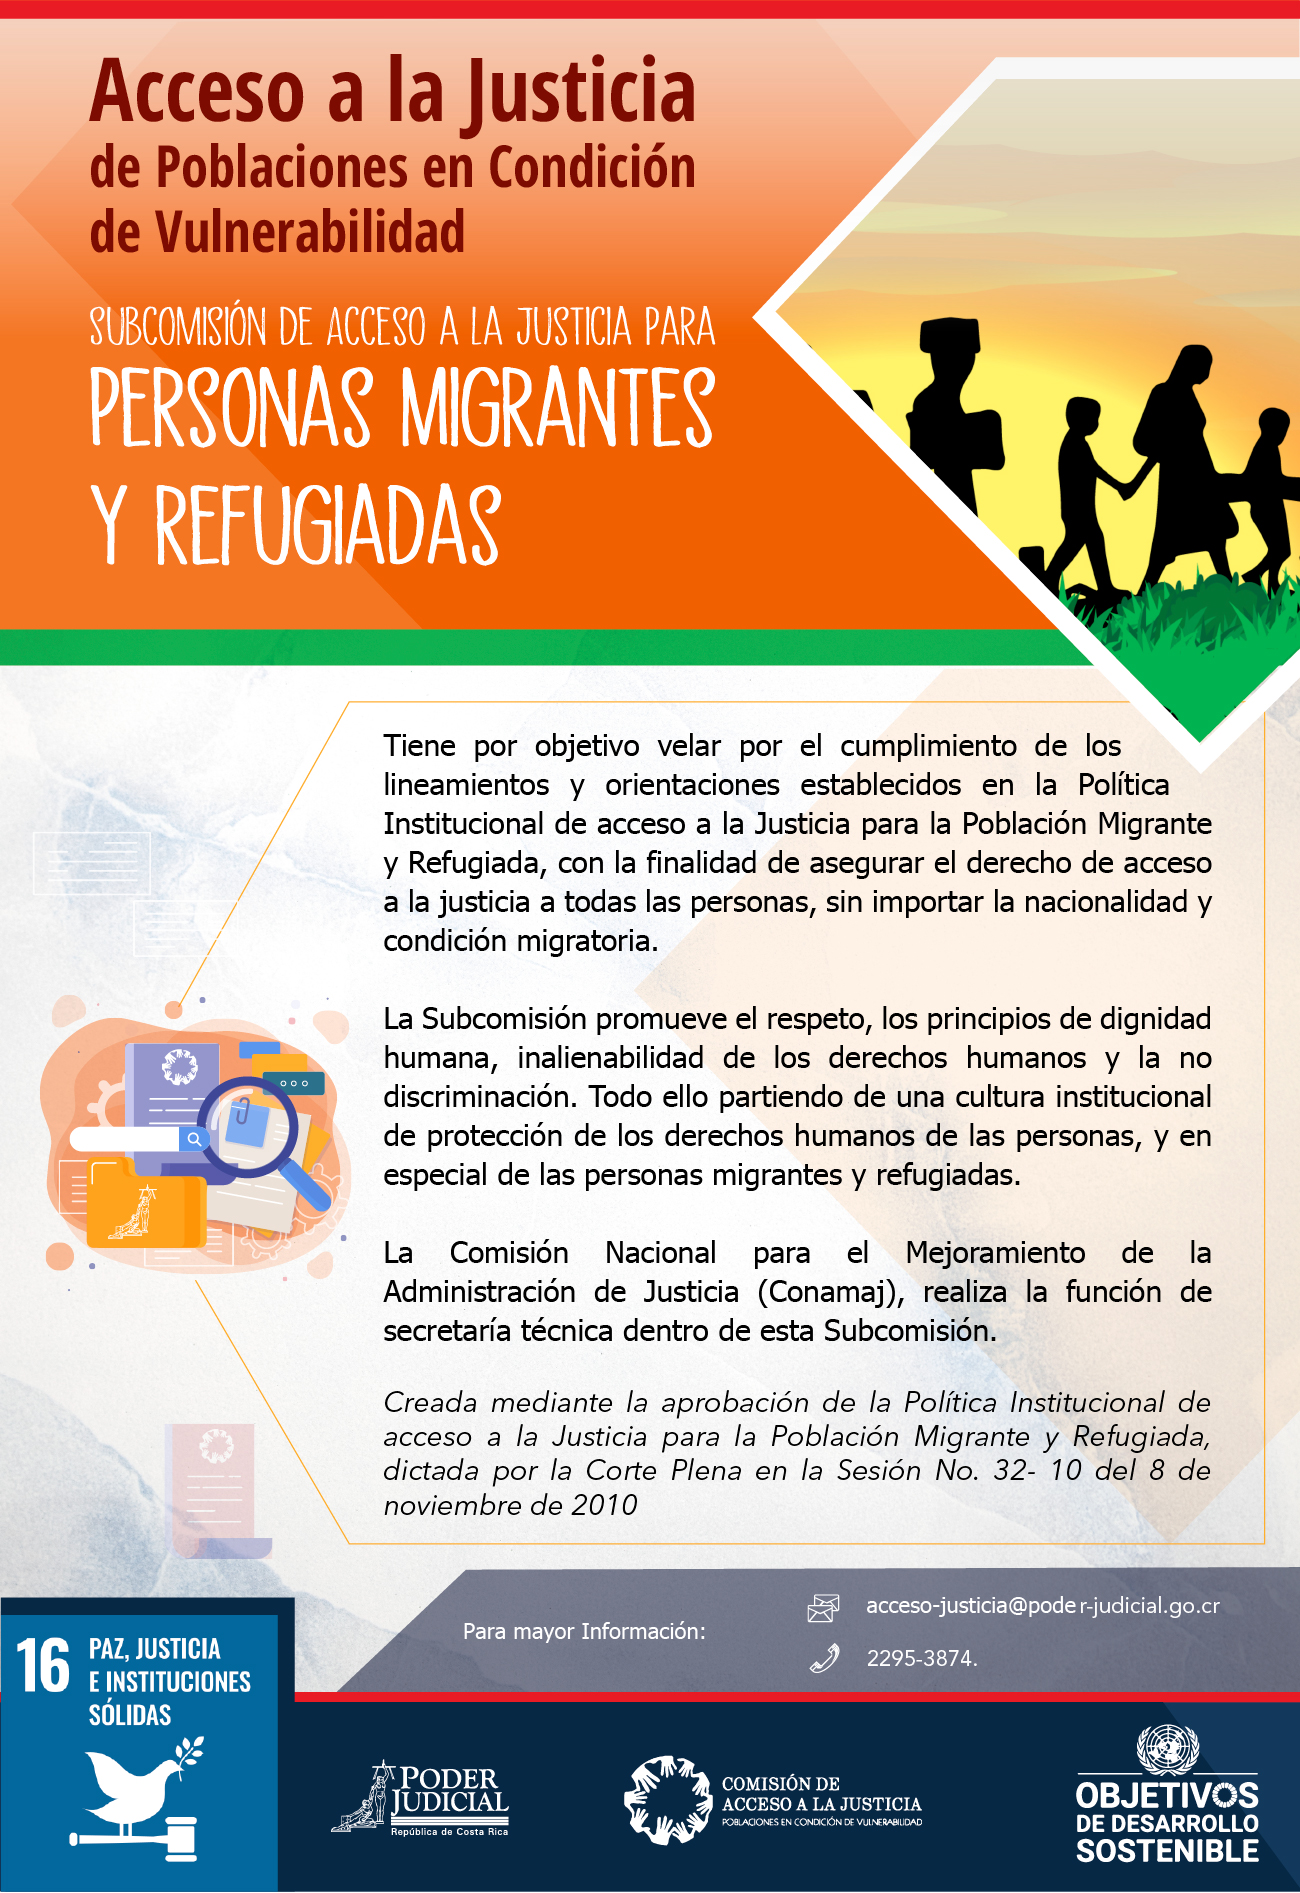 Subcomisión de Acceso a la Justicia para Personas Migrantes y Refugiadas